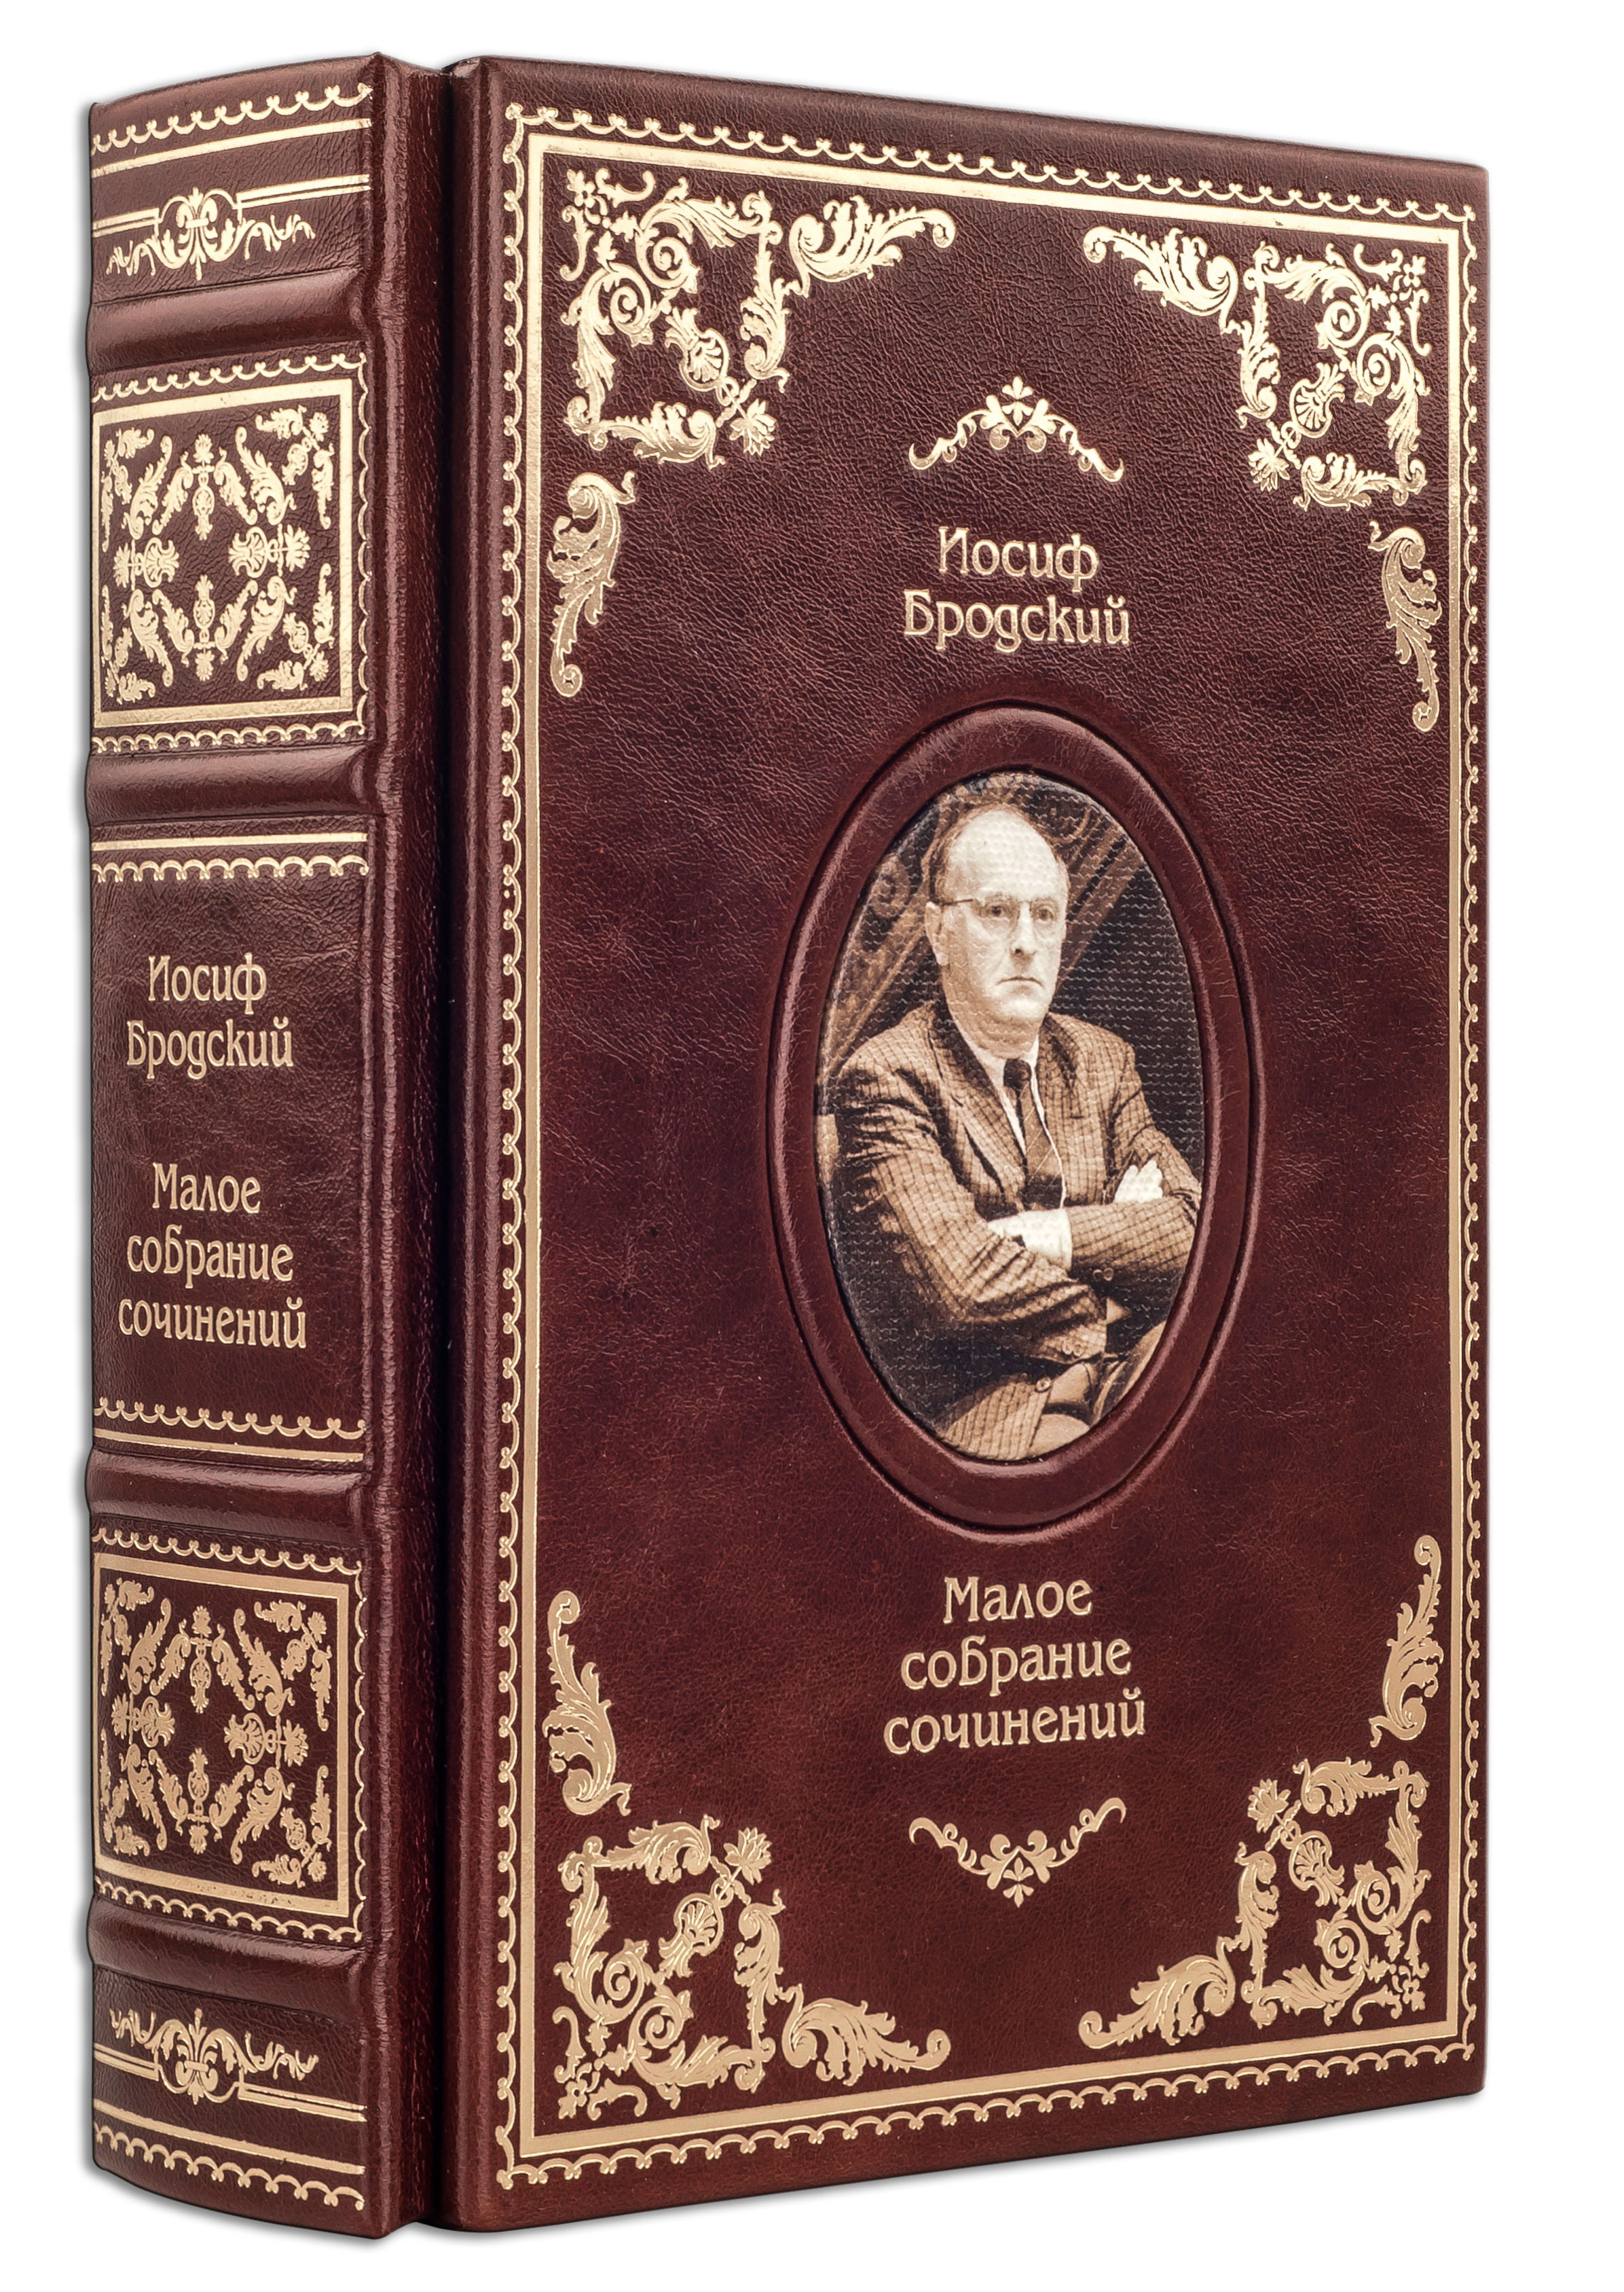 Малое собрание сочинений Бродского И. в кожаном переплете ручной работы с портретом автора